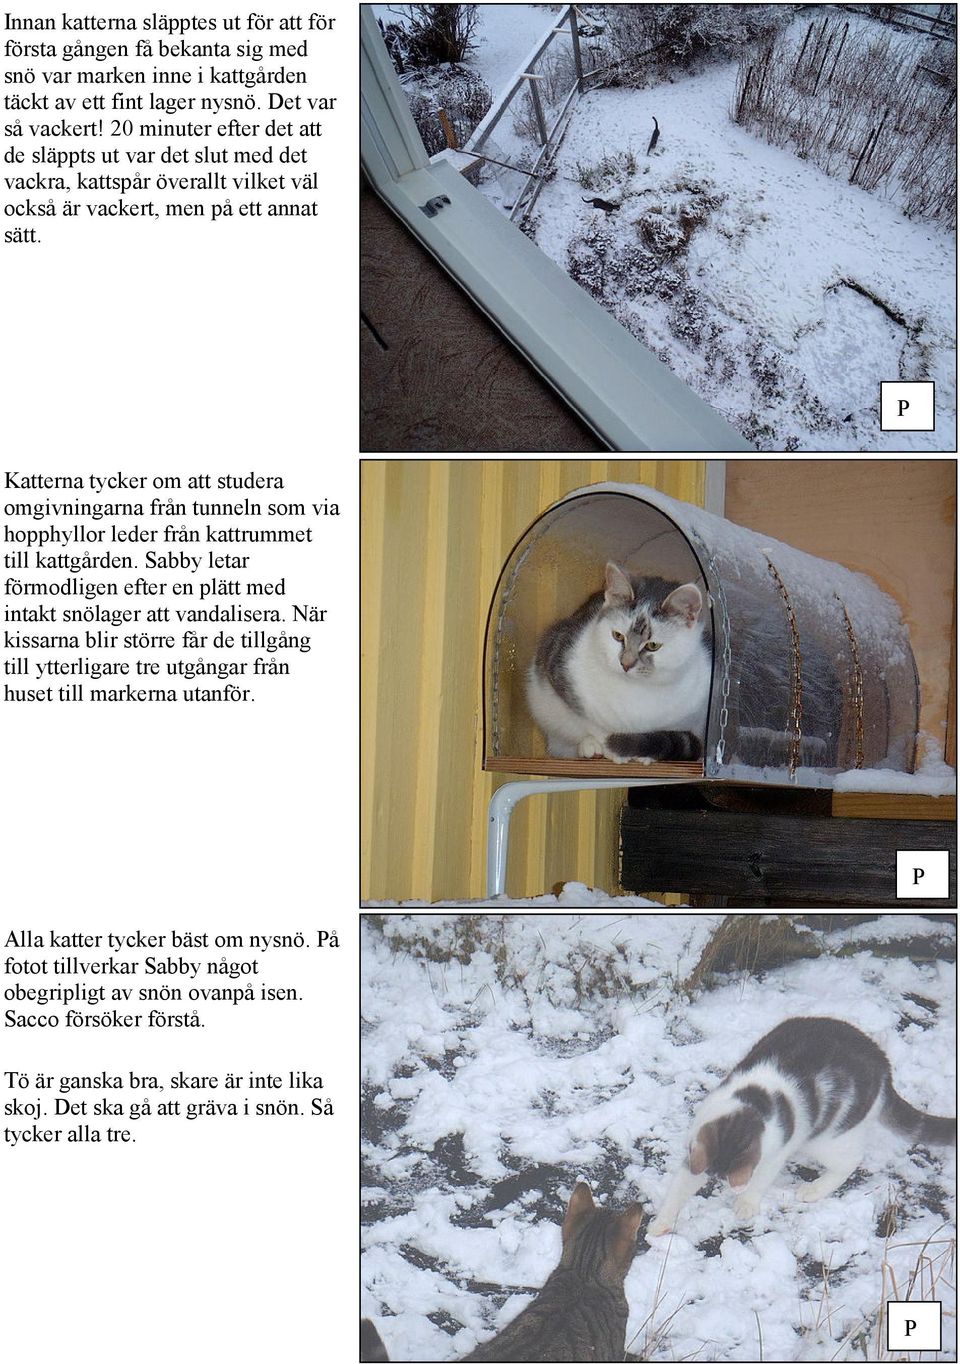 Katterna tycker om att studera omgivningarna från tunneln som via hopphyllor leder från kattrummet till kattgården. Sabby letar förmodligen efter en plätt med intakt snölager att vandalisera.